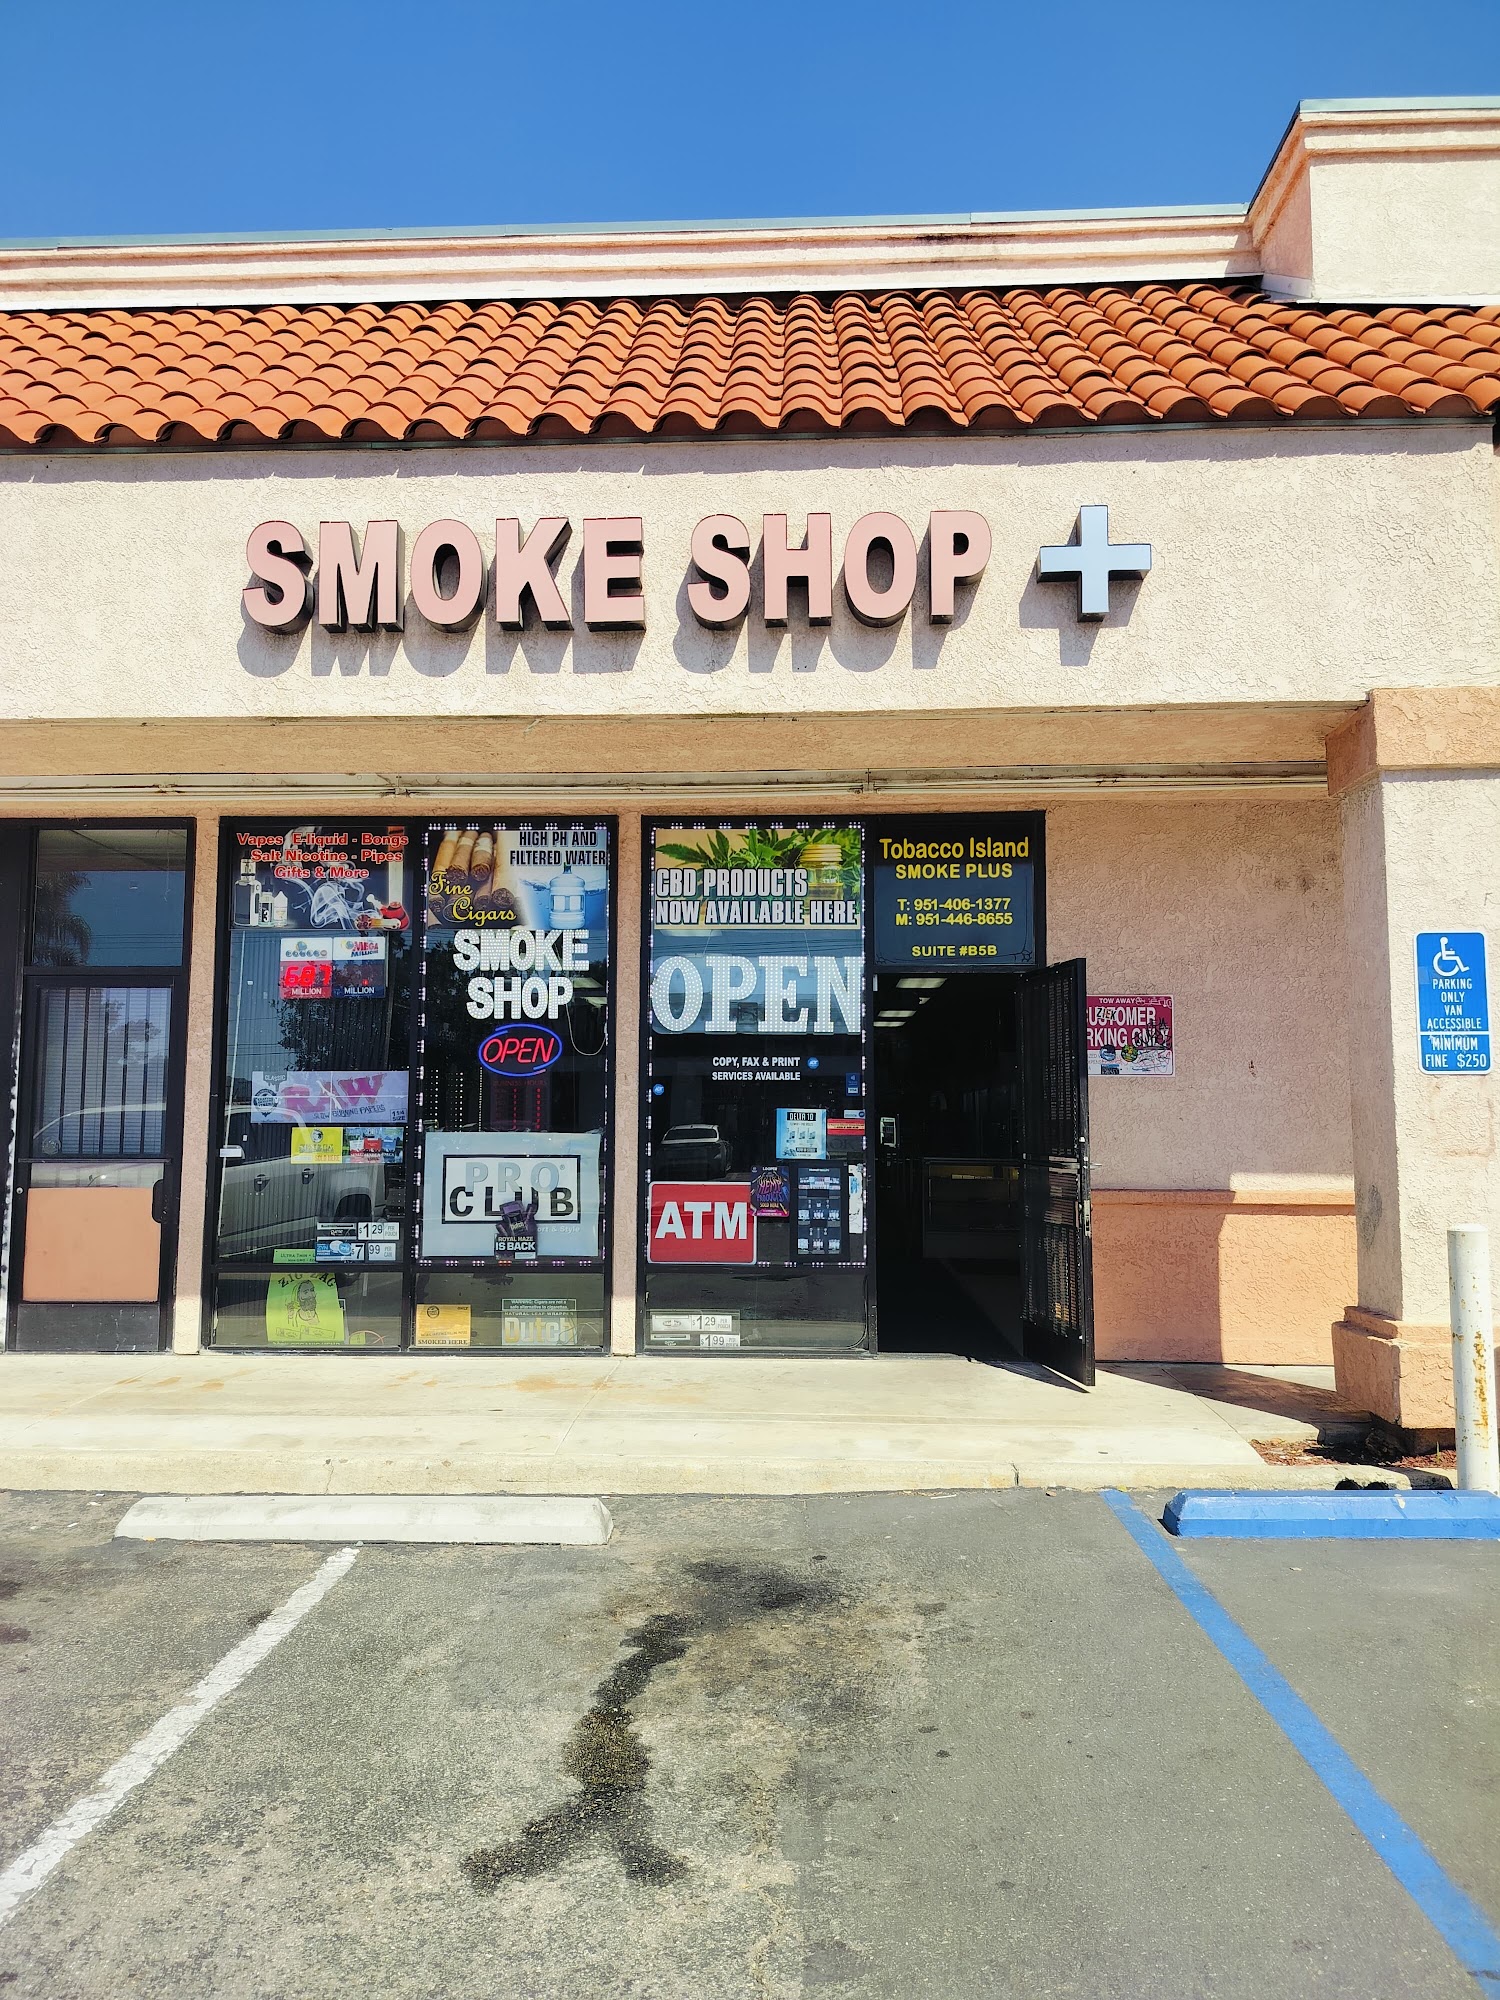 Smt smoke shop